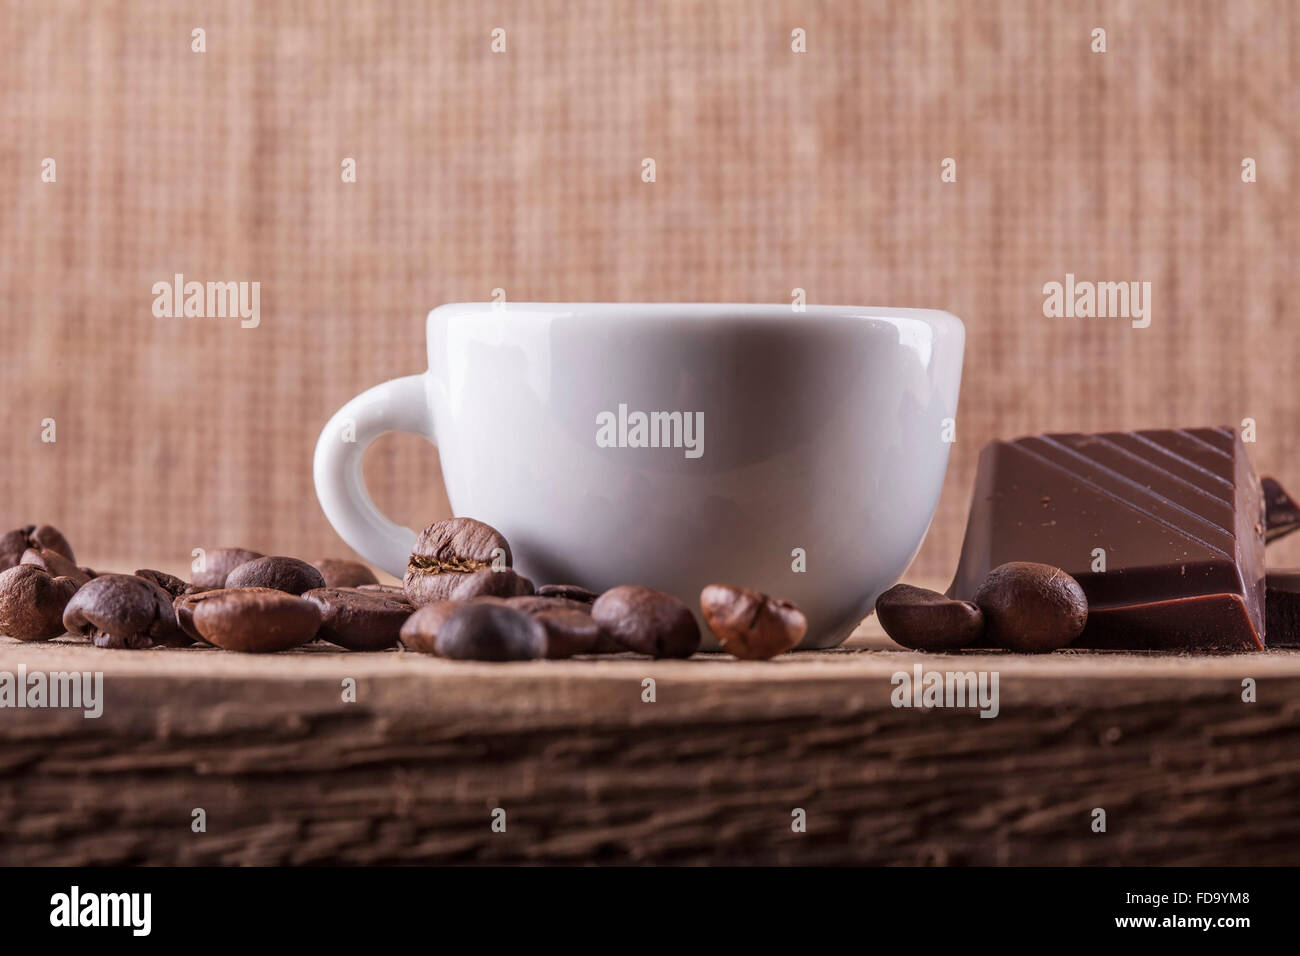 Tasse, Kaffee-Bohnen, Schokolade auf einem Holzbrett Closeup Hintergrund Stockfoto